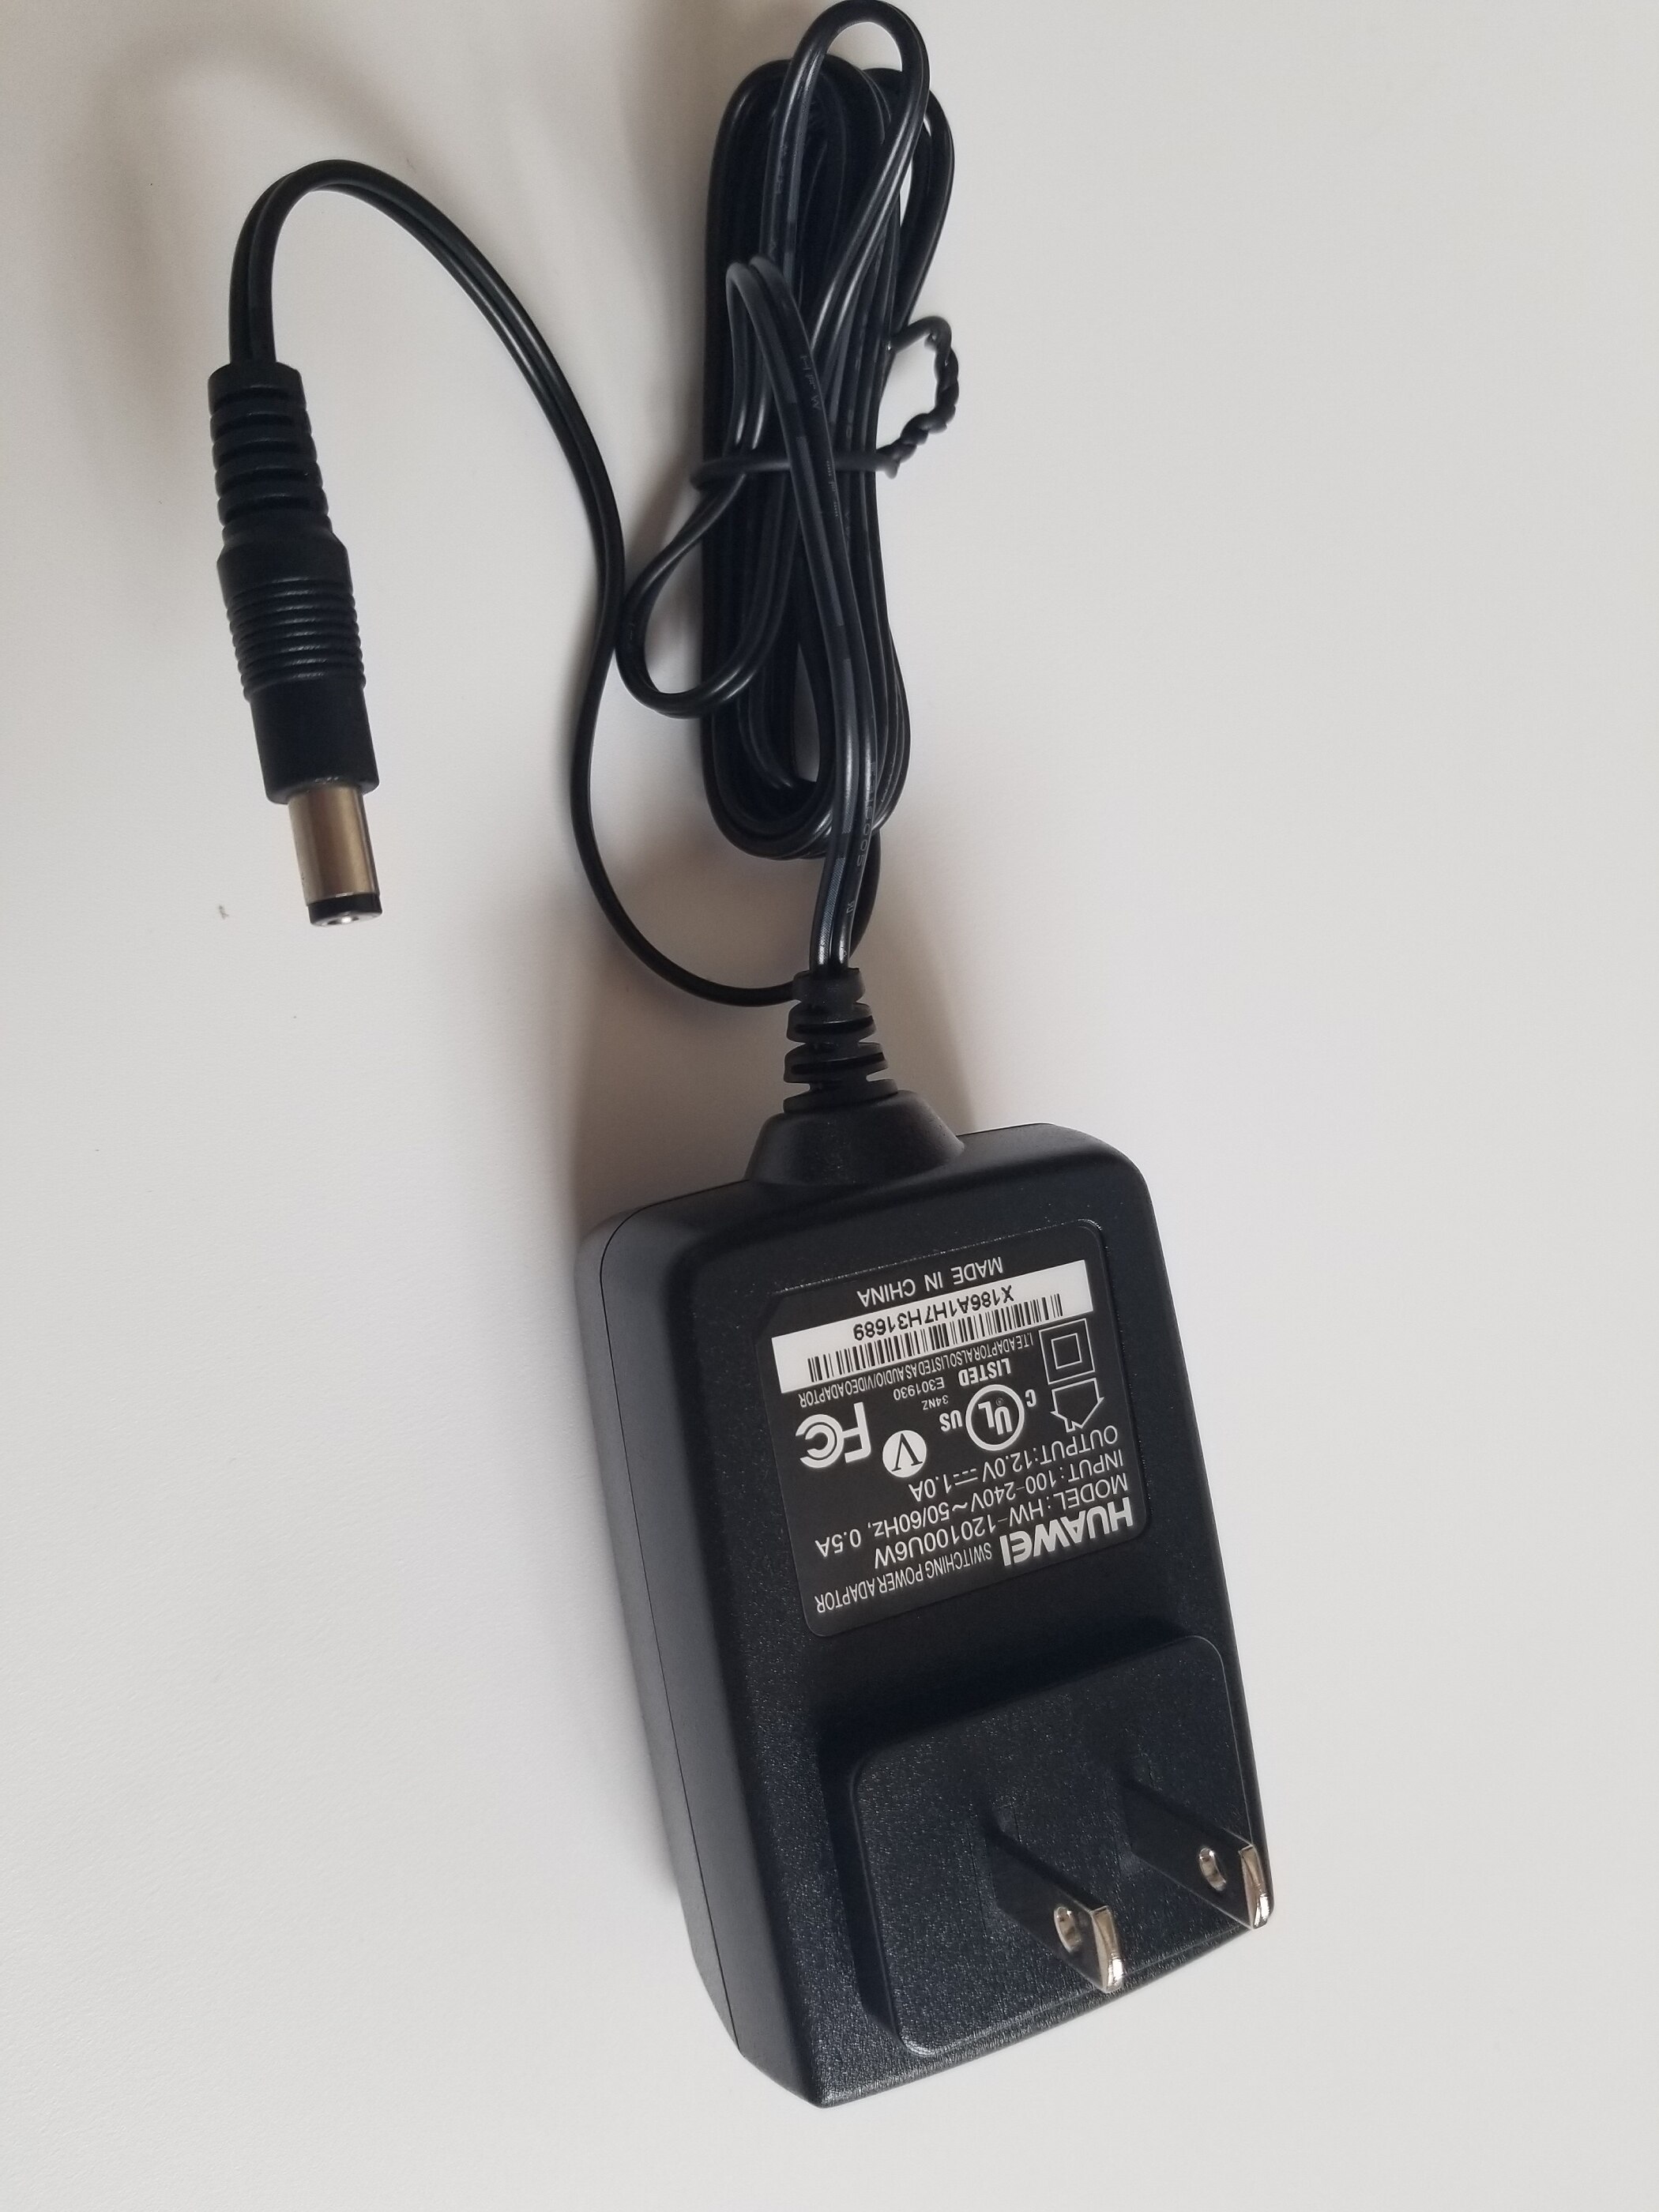 HUAWEI ADAPTER EU US EN US Plug Power Adapter OUTPUT 12V--1A: US PLUG